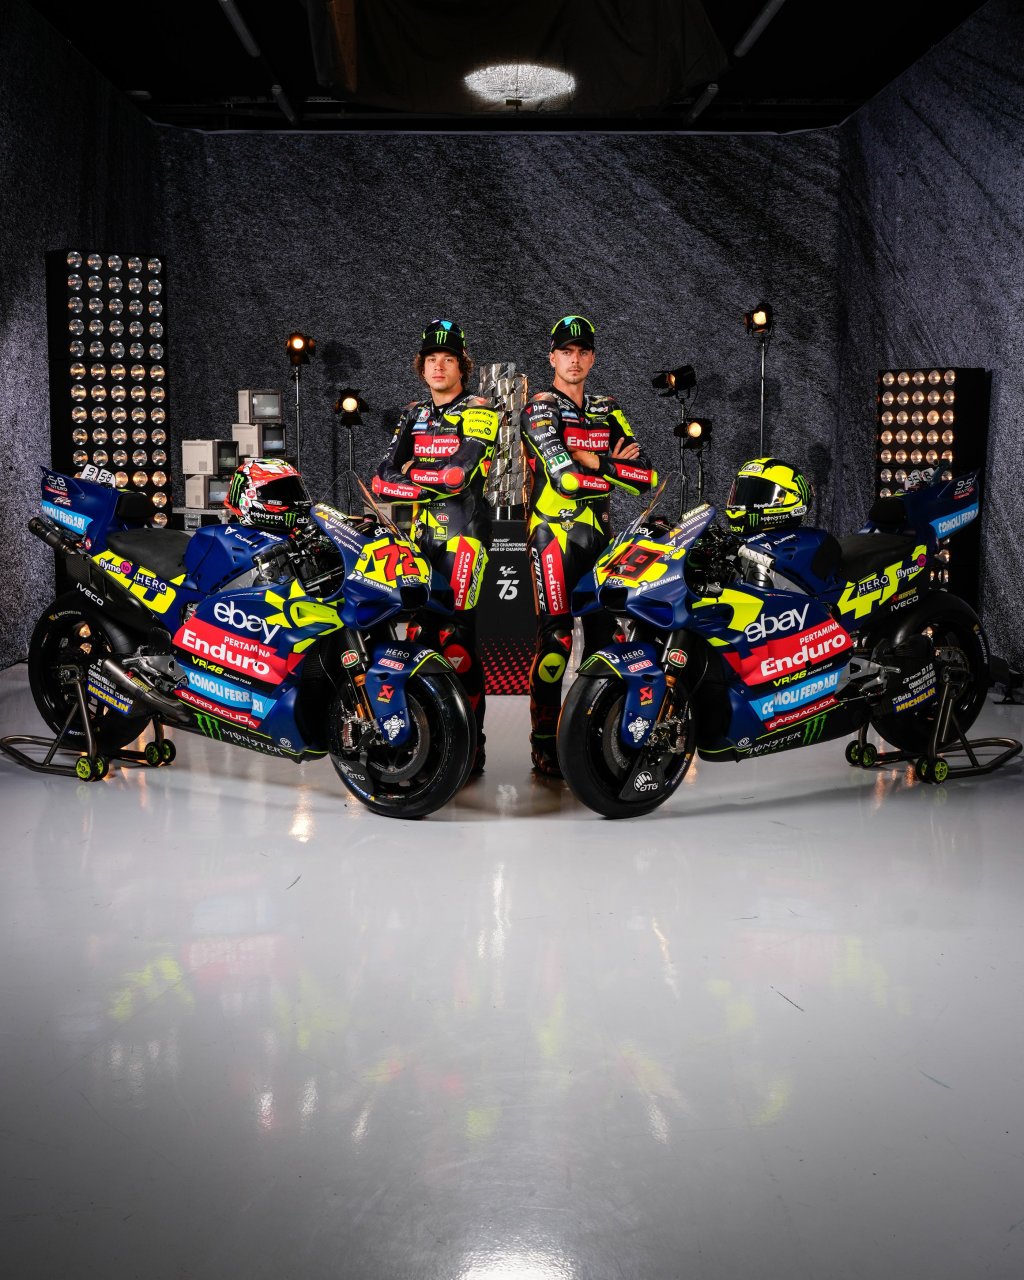 «ВР46» представила расцветку в честь Валентино Росси, «Ямаха» – красно-белую ливрею, «Априлия» – черную для ретро-уик-энда Гран-при Великобритании MotoGP